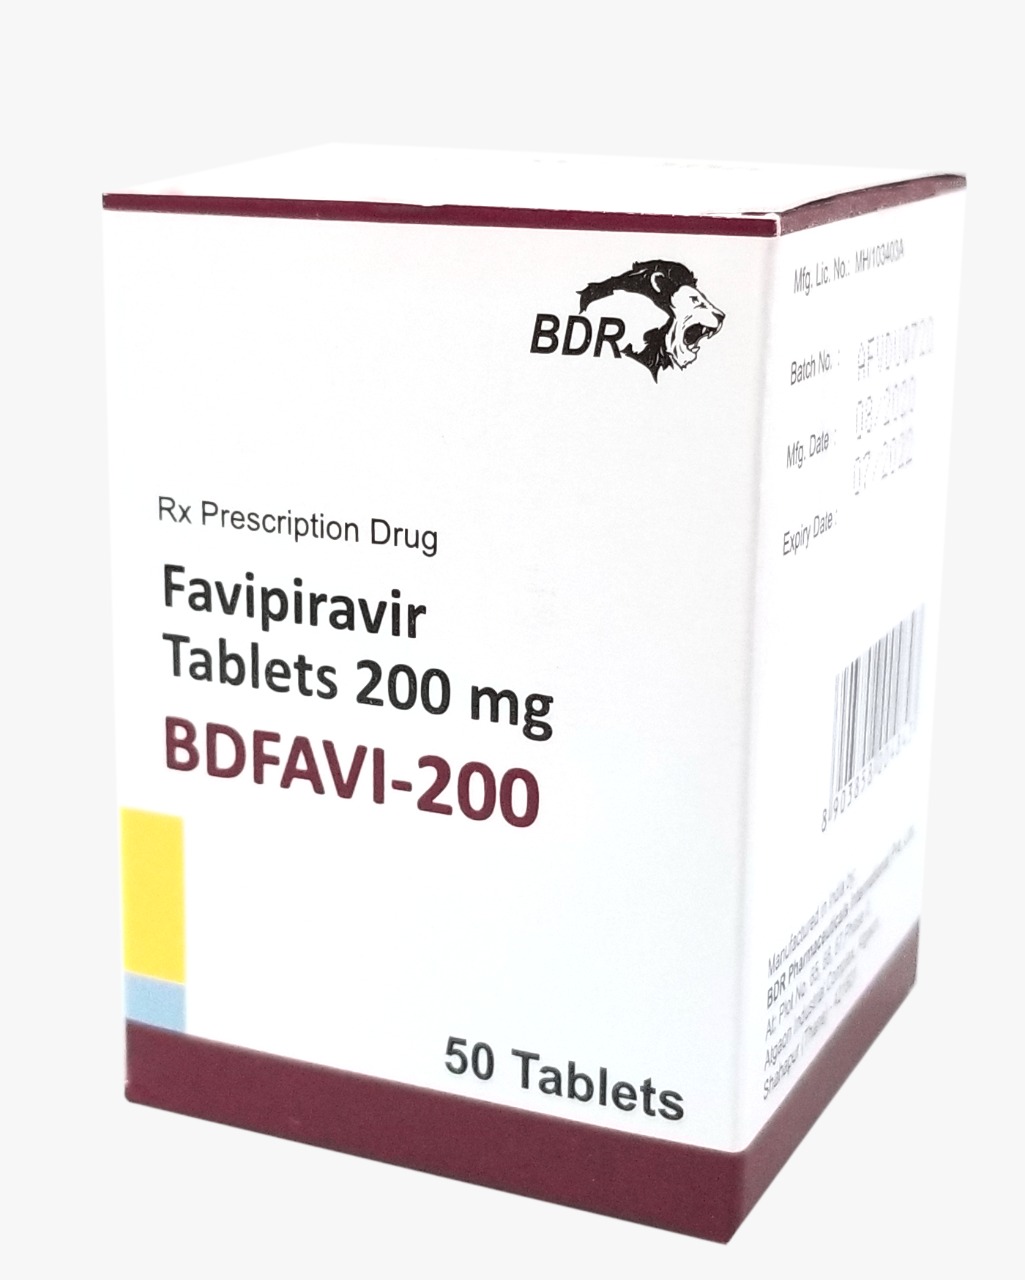 Favipiravir ya está disponible en República Dominicana para el tratamiento de pacientes con COVID-19